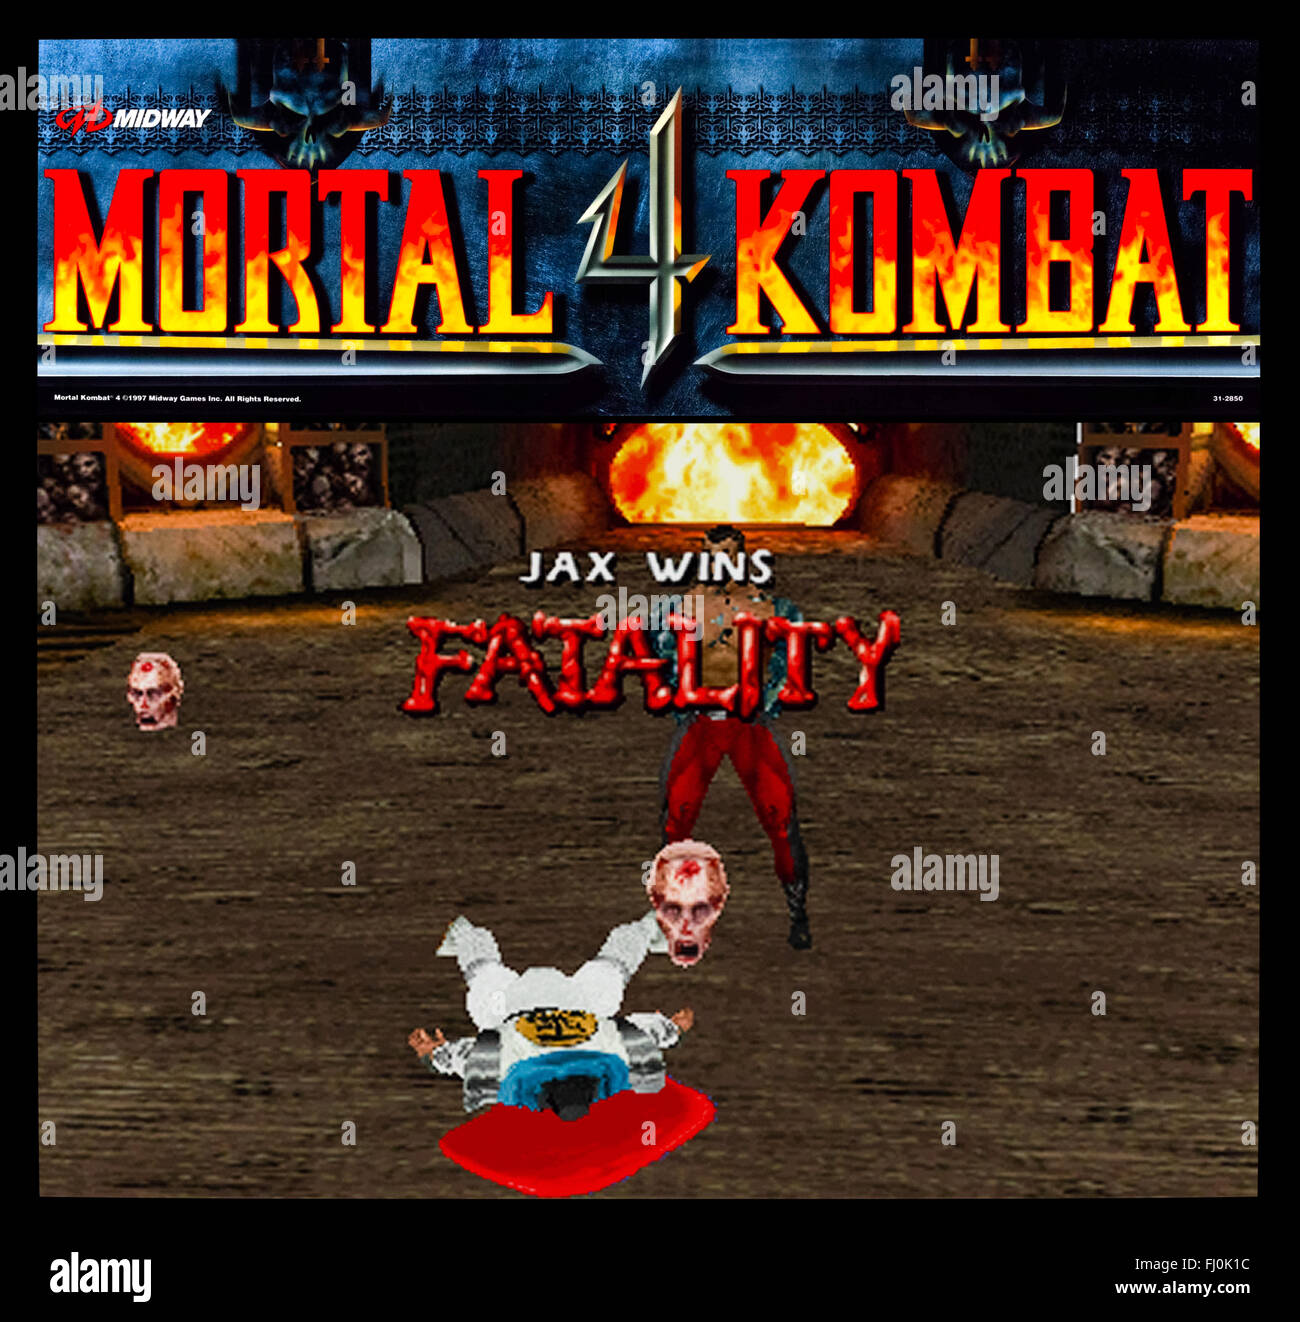 'Mortal Kombat 4' publié en 1997 par Midway Games, une autre suite à l'origine Mortal Kombat introduit l'infographie 3D et l'utilisation d'armes nucléaires et d'autres objet dans le jeu. Voir la description pour plus d'informations. Banque D'Images